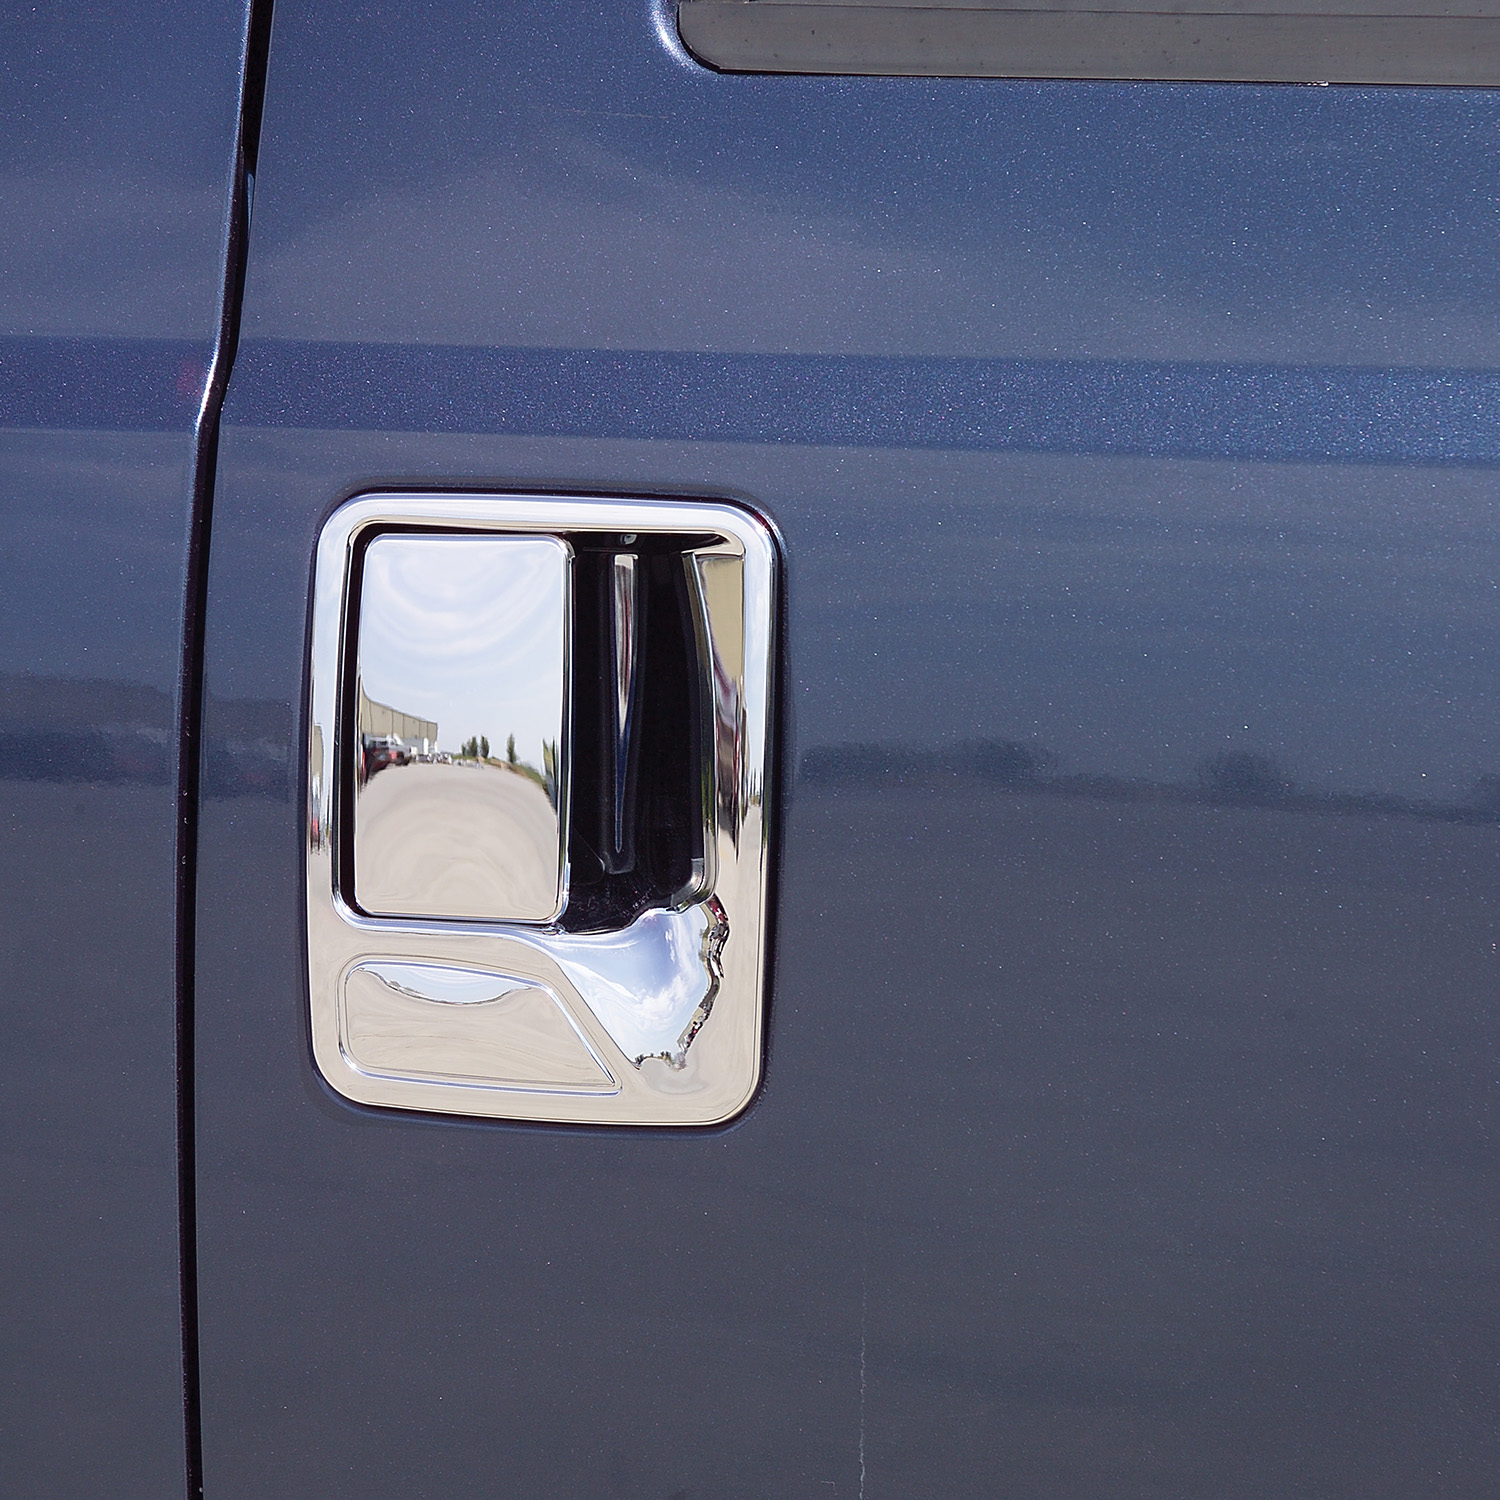 400036 - Putco Chrome Door Handle Covers Fits Chevy Silverado / GMC Sierra  2007-2014 - Front Door Handle Covers